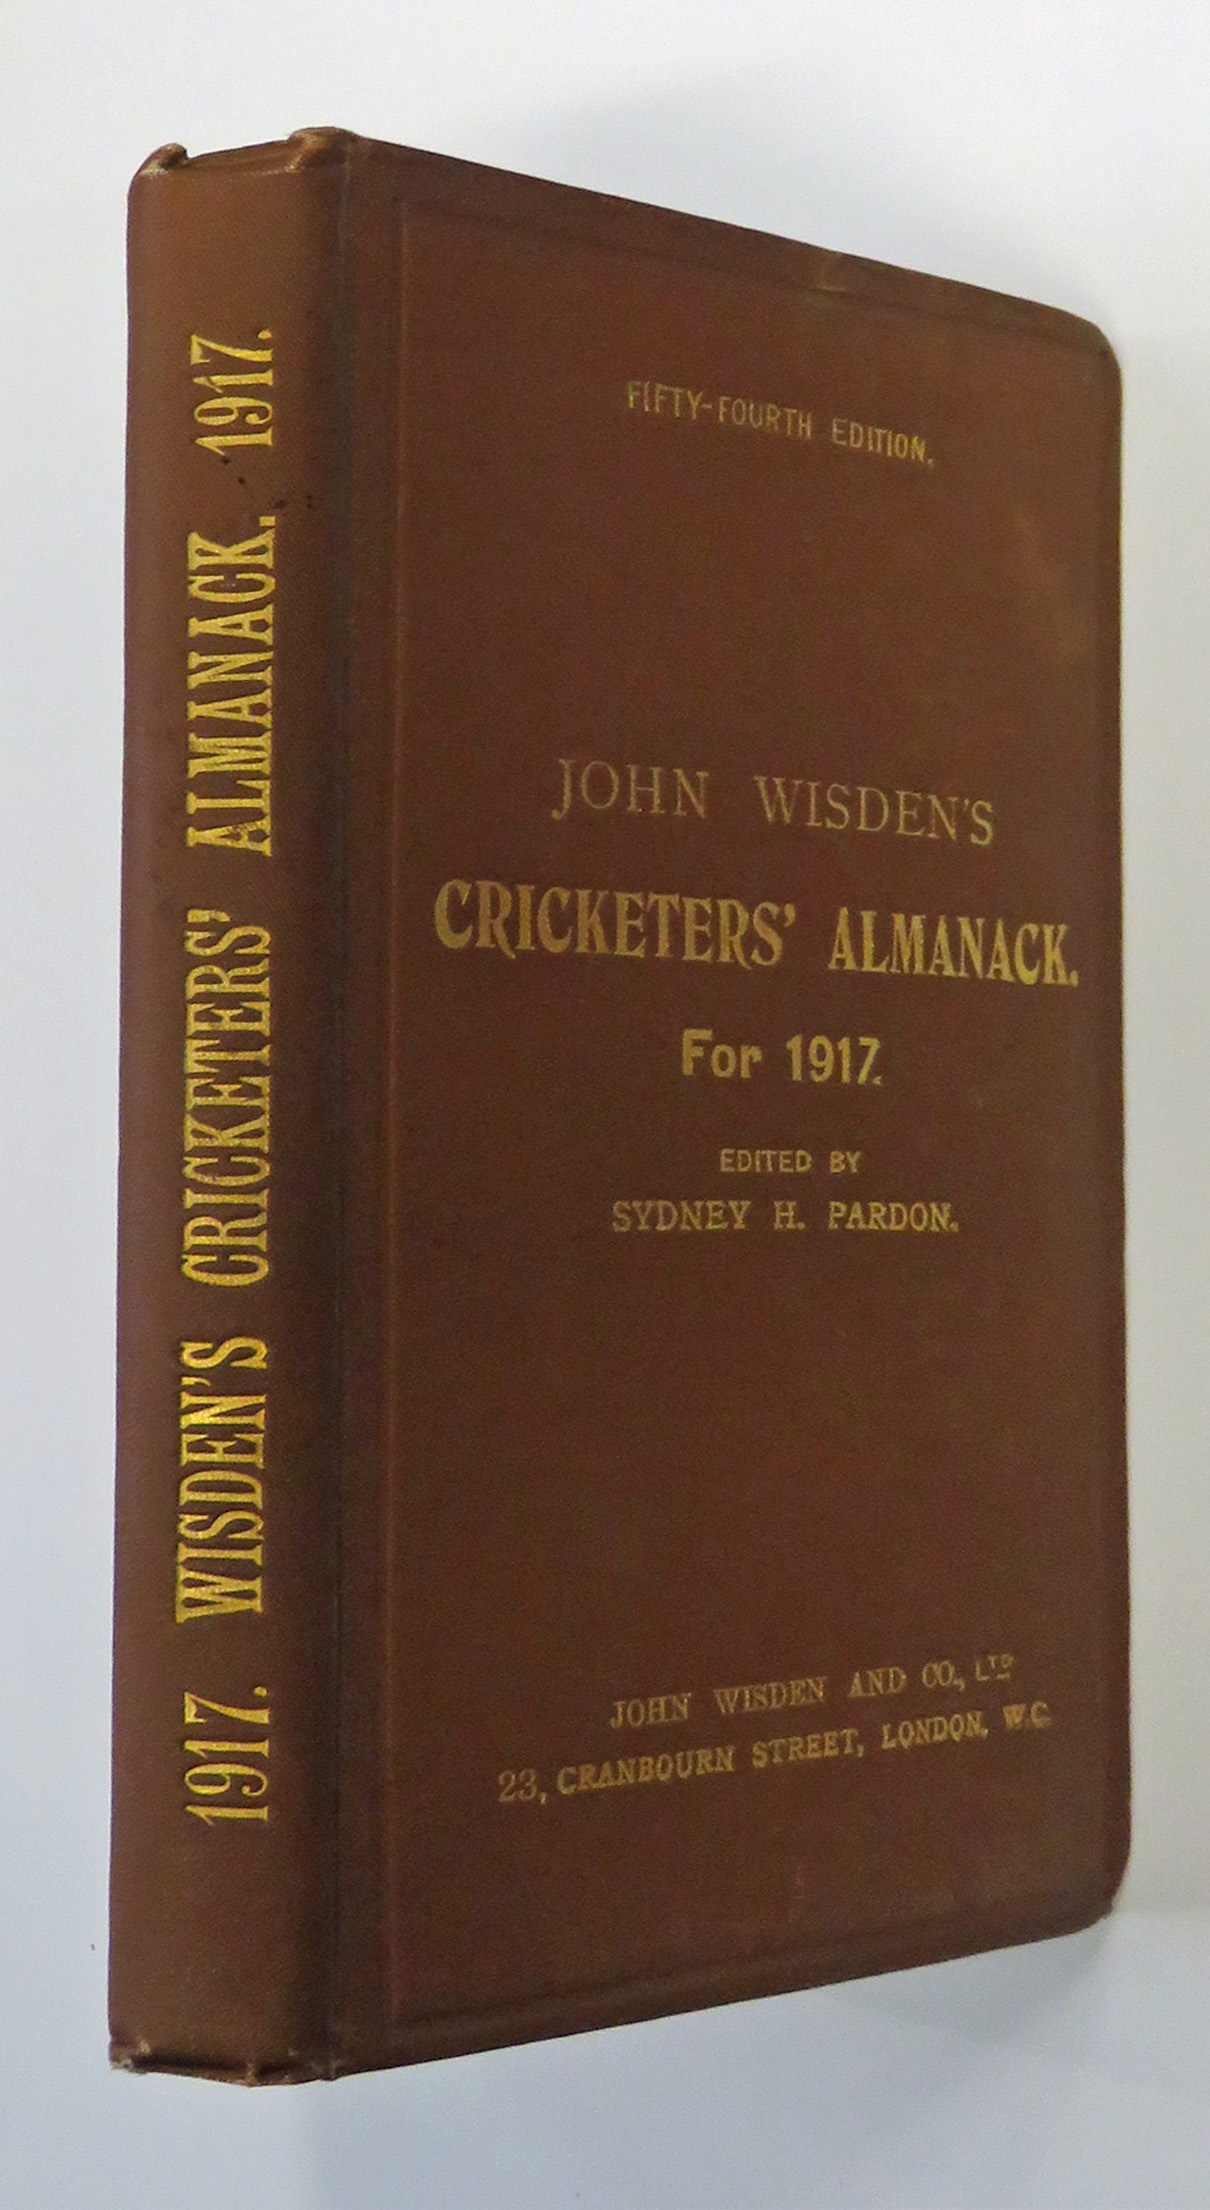 **John Wisden's Cricketers' Almanack for 1917